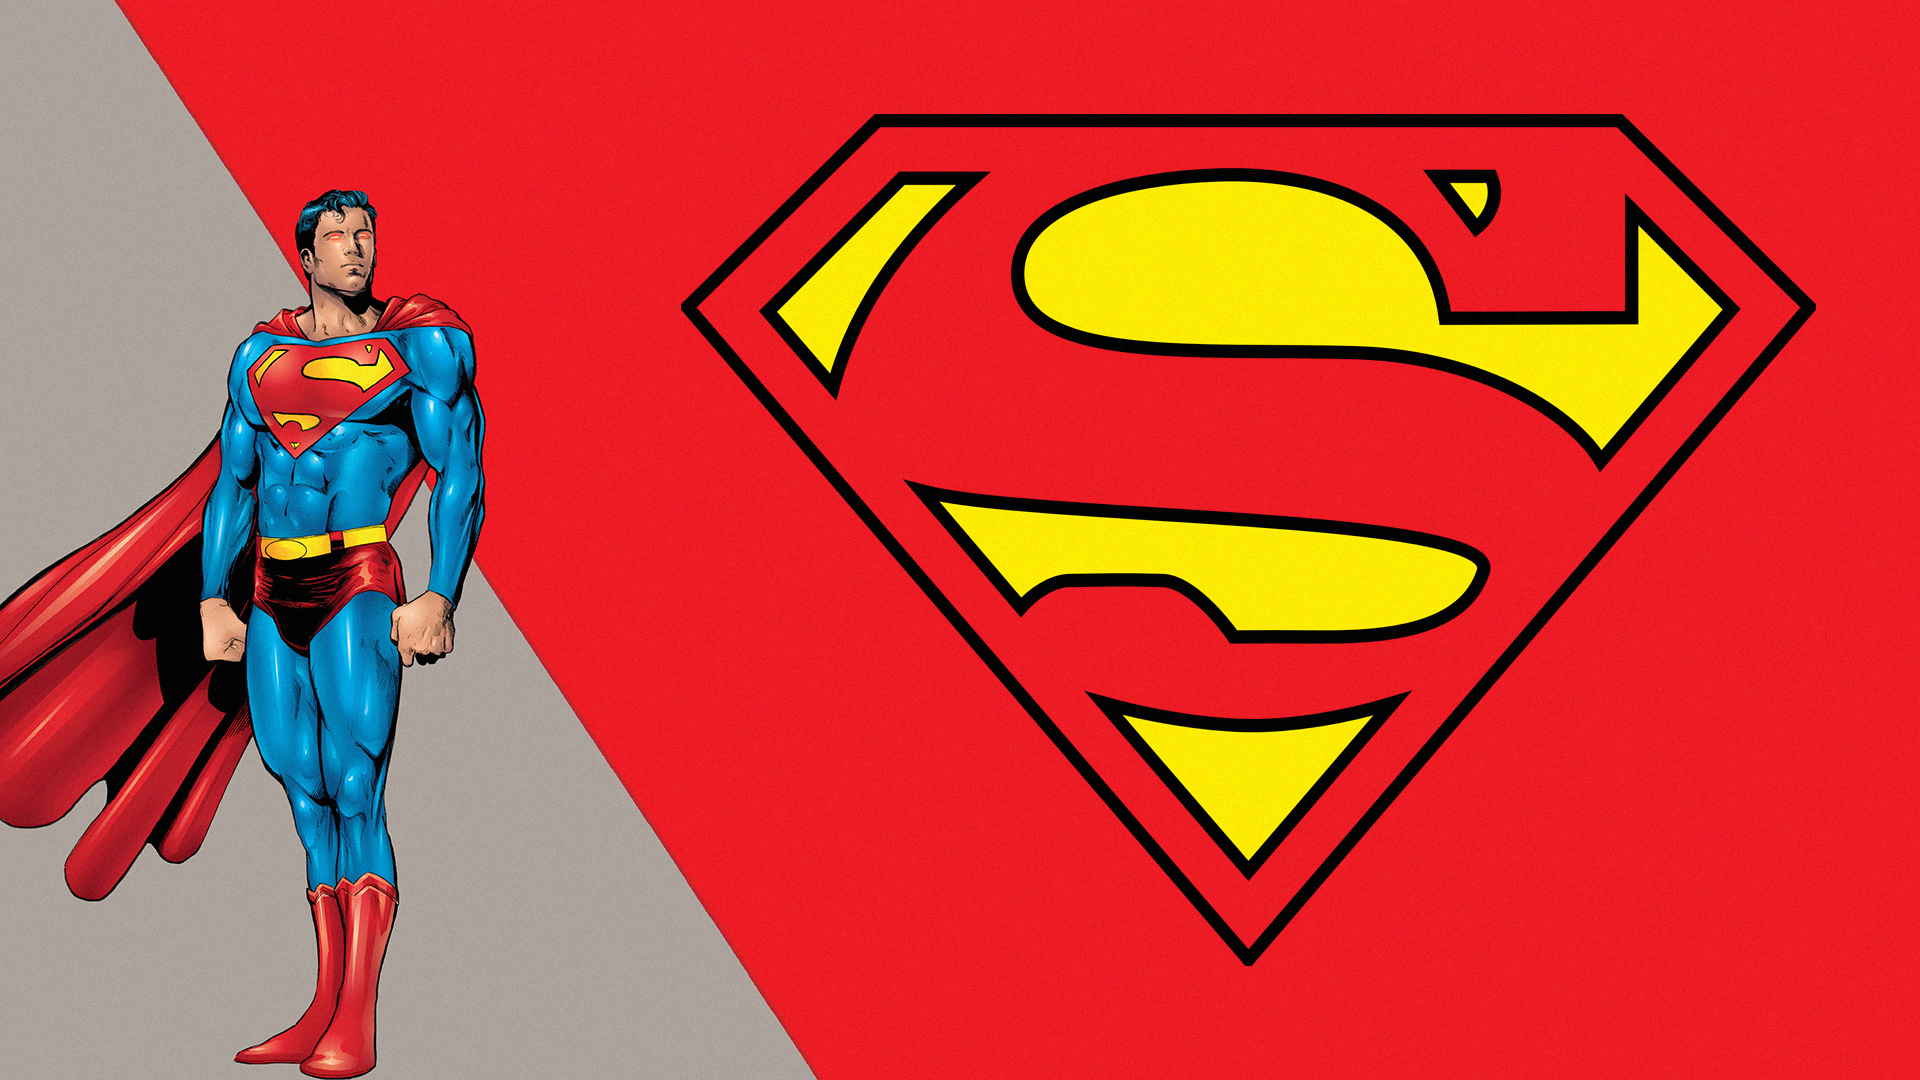 Скачать обои бесплатно Комиксы, Комиксы Dc, Супермен, Логотип Супермена, Лига Справедливости картинка на рабочий стол ПК